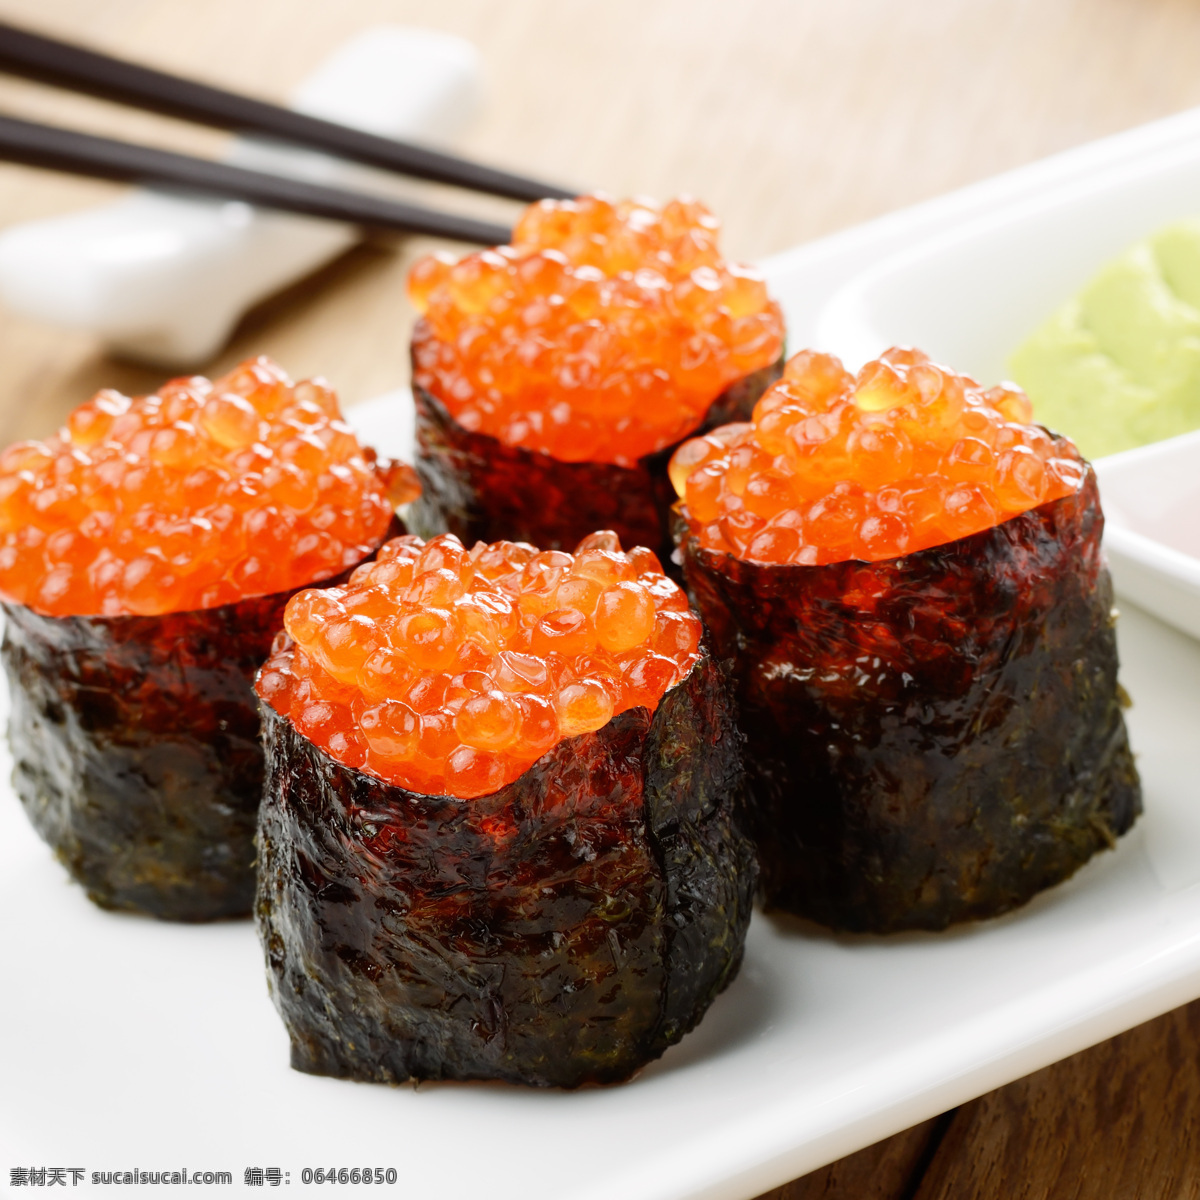 鱼 籽 寿司 鱼籽寿司 食物 日本料理 外国美食 餐饮美食